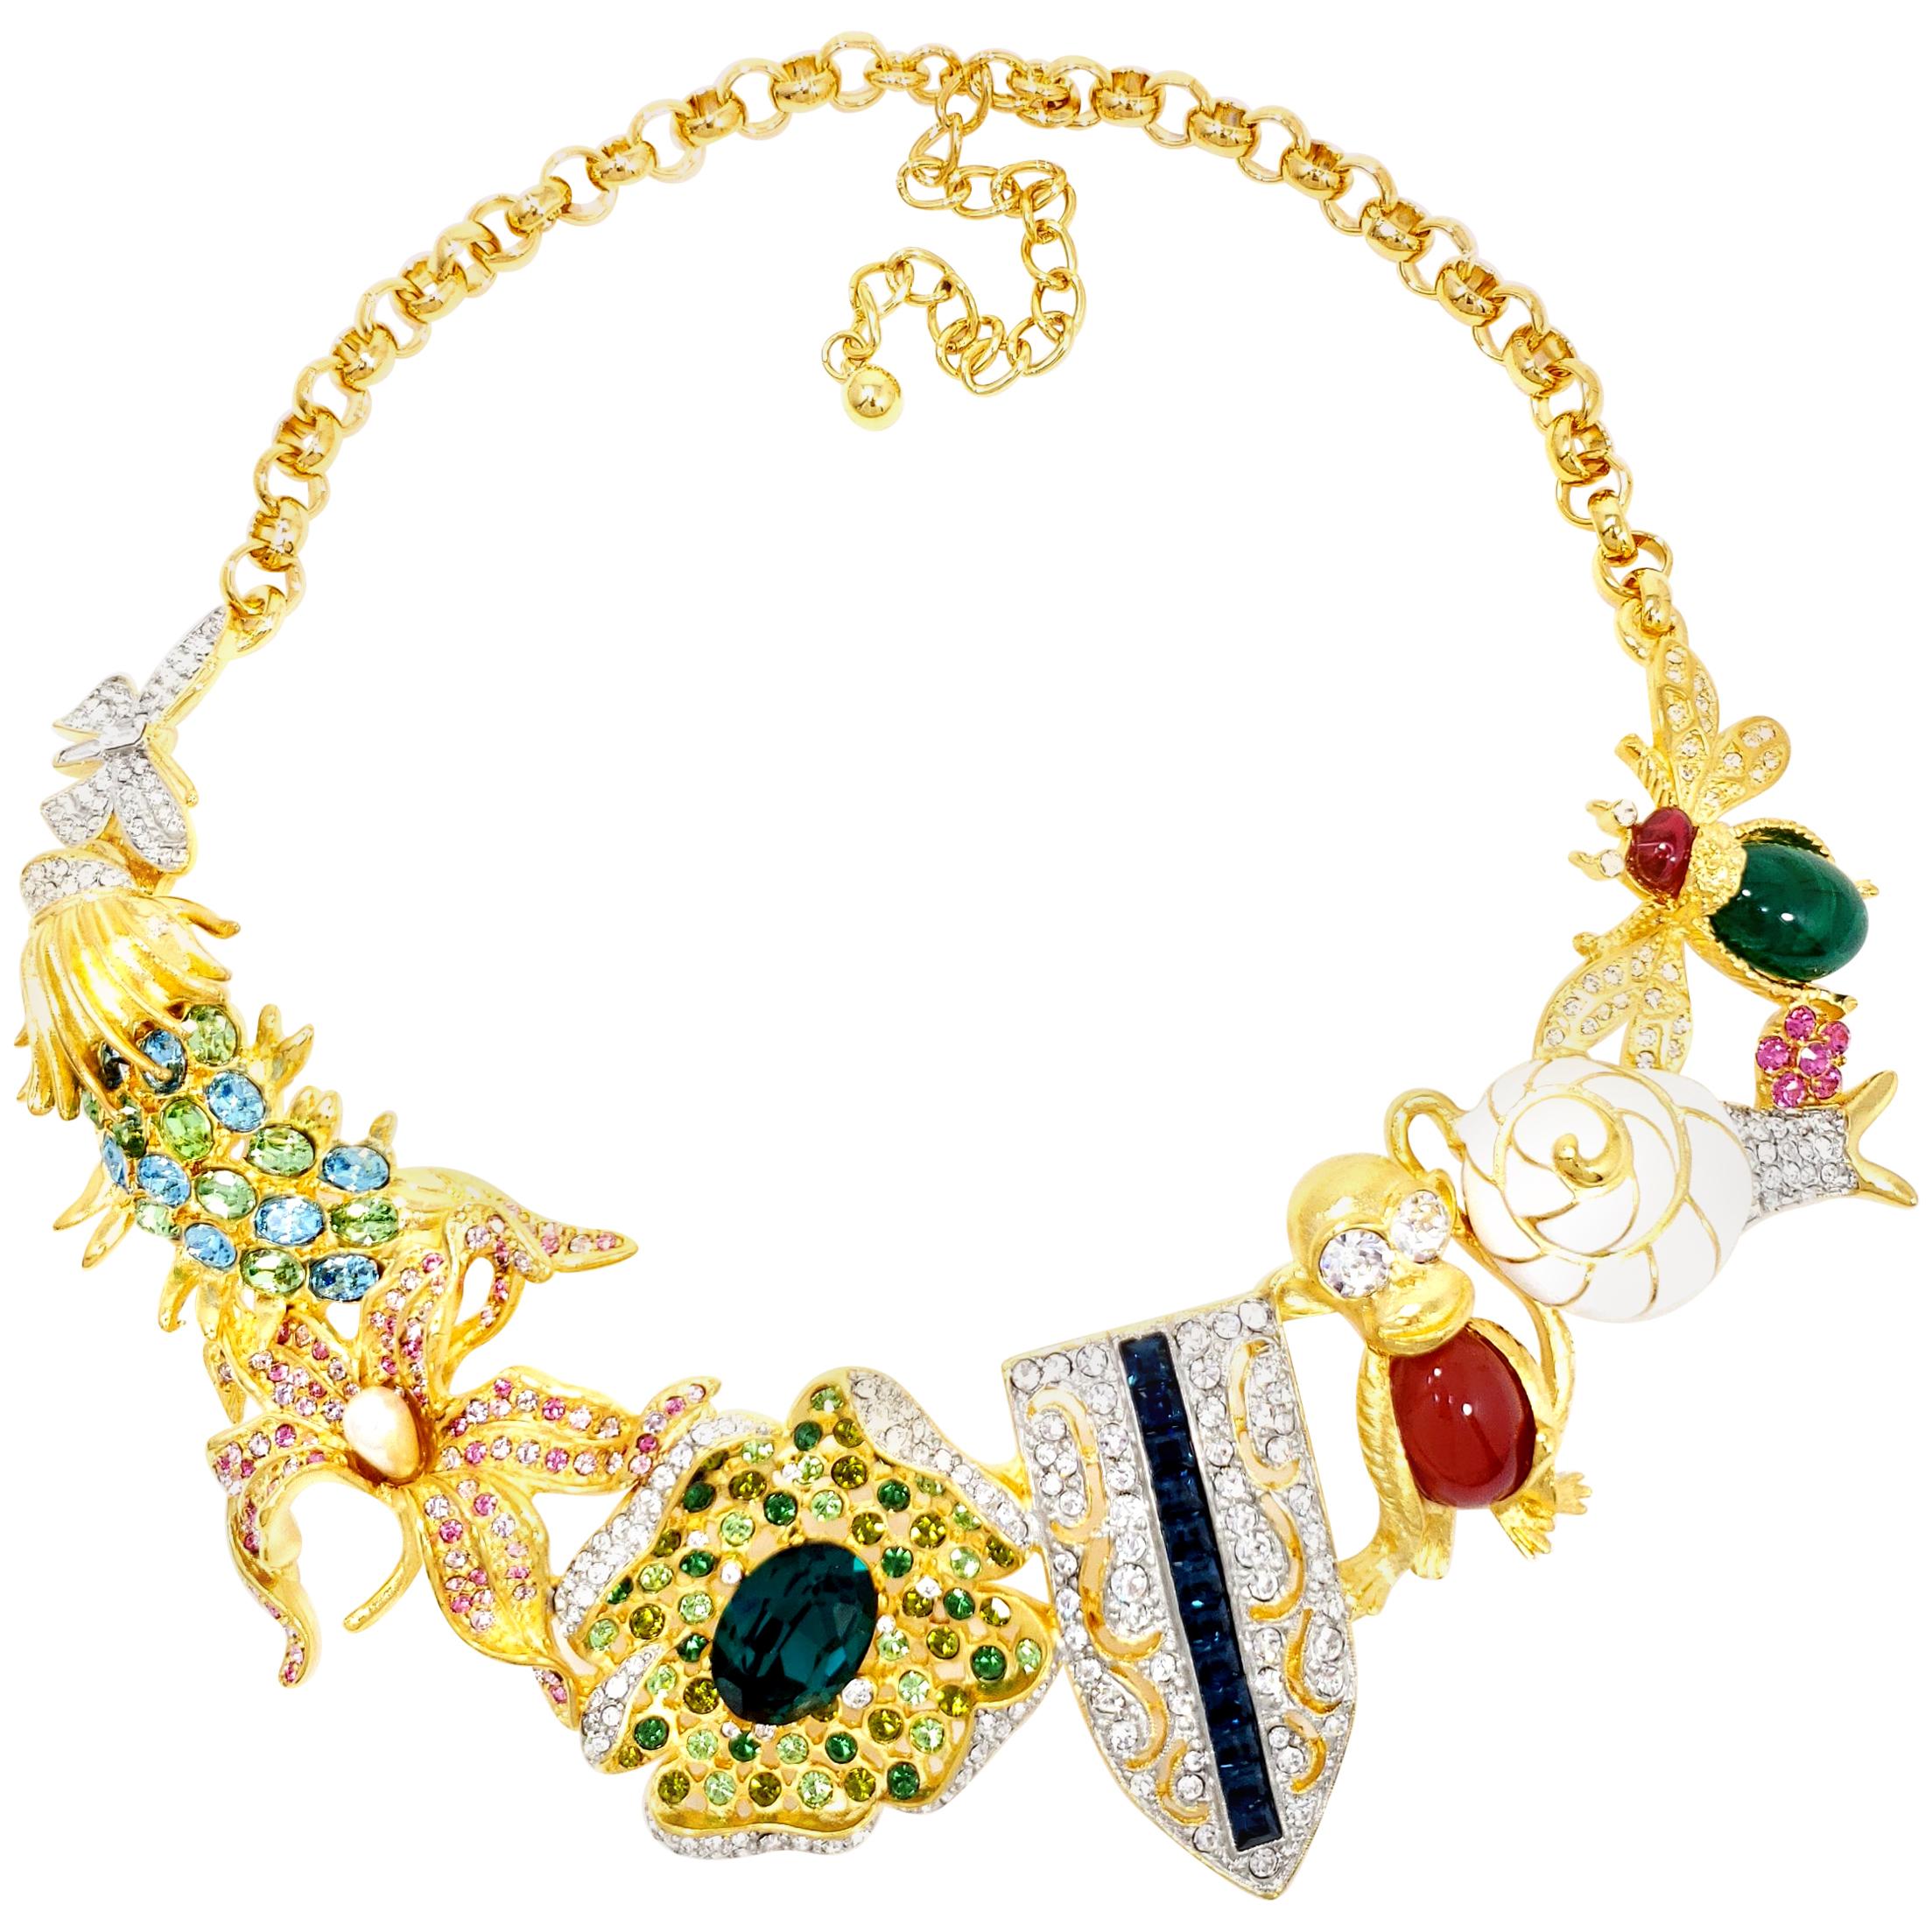 Kenneth Jay Lane, Halskette mit Kaleidoskop-Kragen, Emaille und Kristallmotiven, Gold